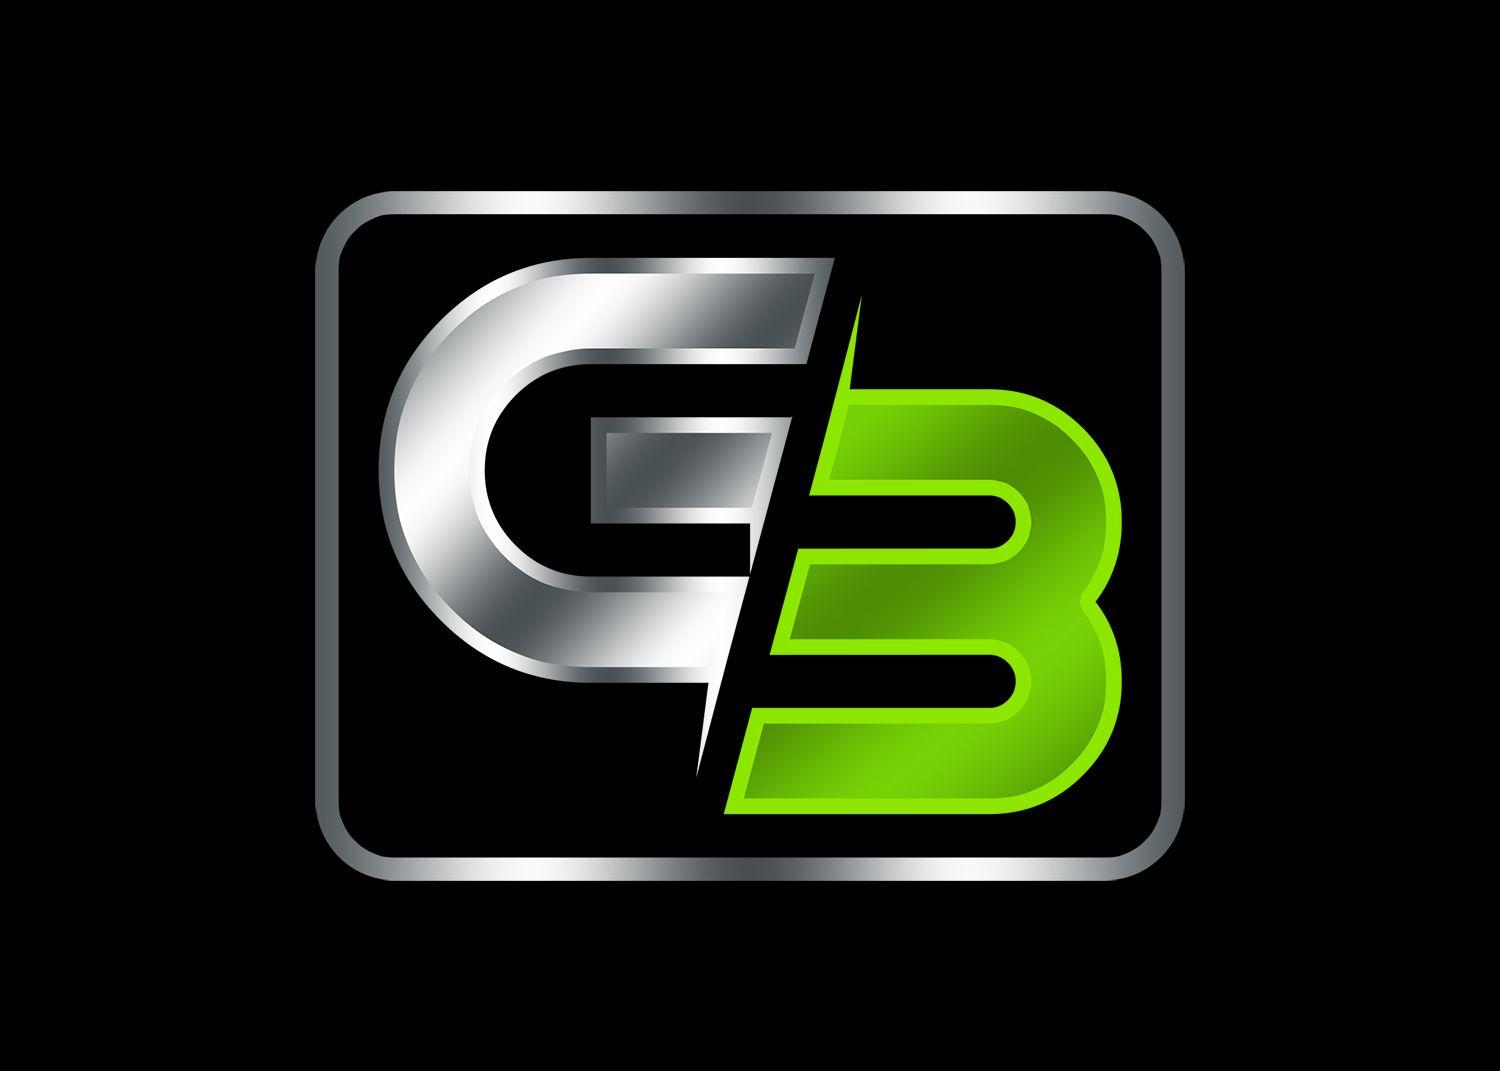 G3 Logo - Modern, Elegant Logo Design for G3 only by Design Ninja 47 | Design ...